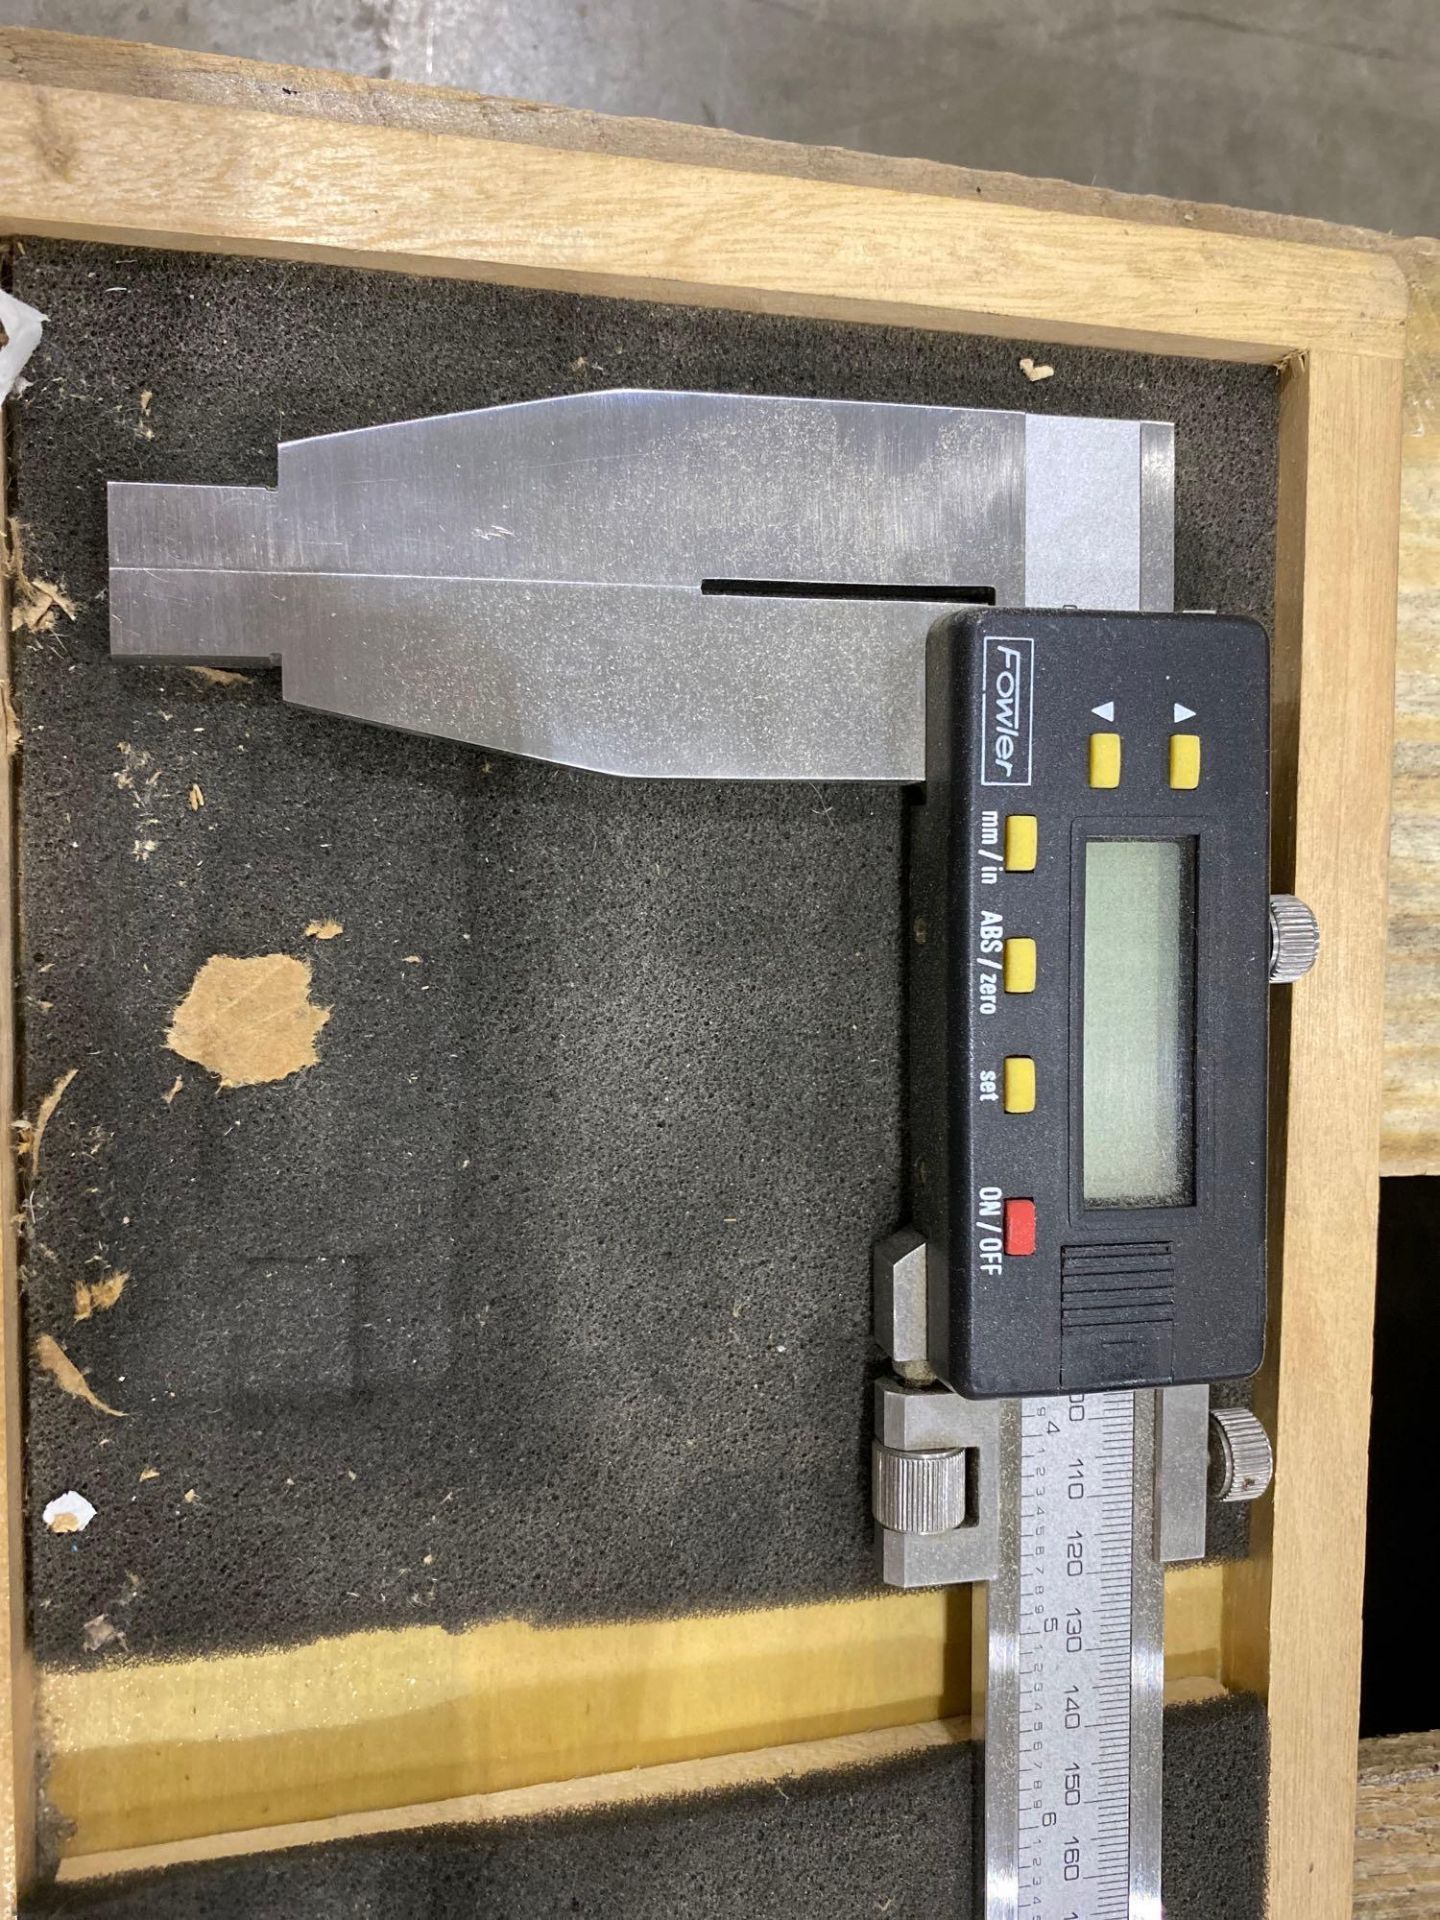 Fowler Digital Micrometer w/Case - Image 2 of 3